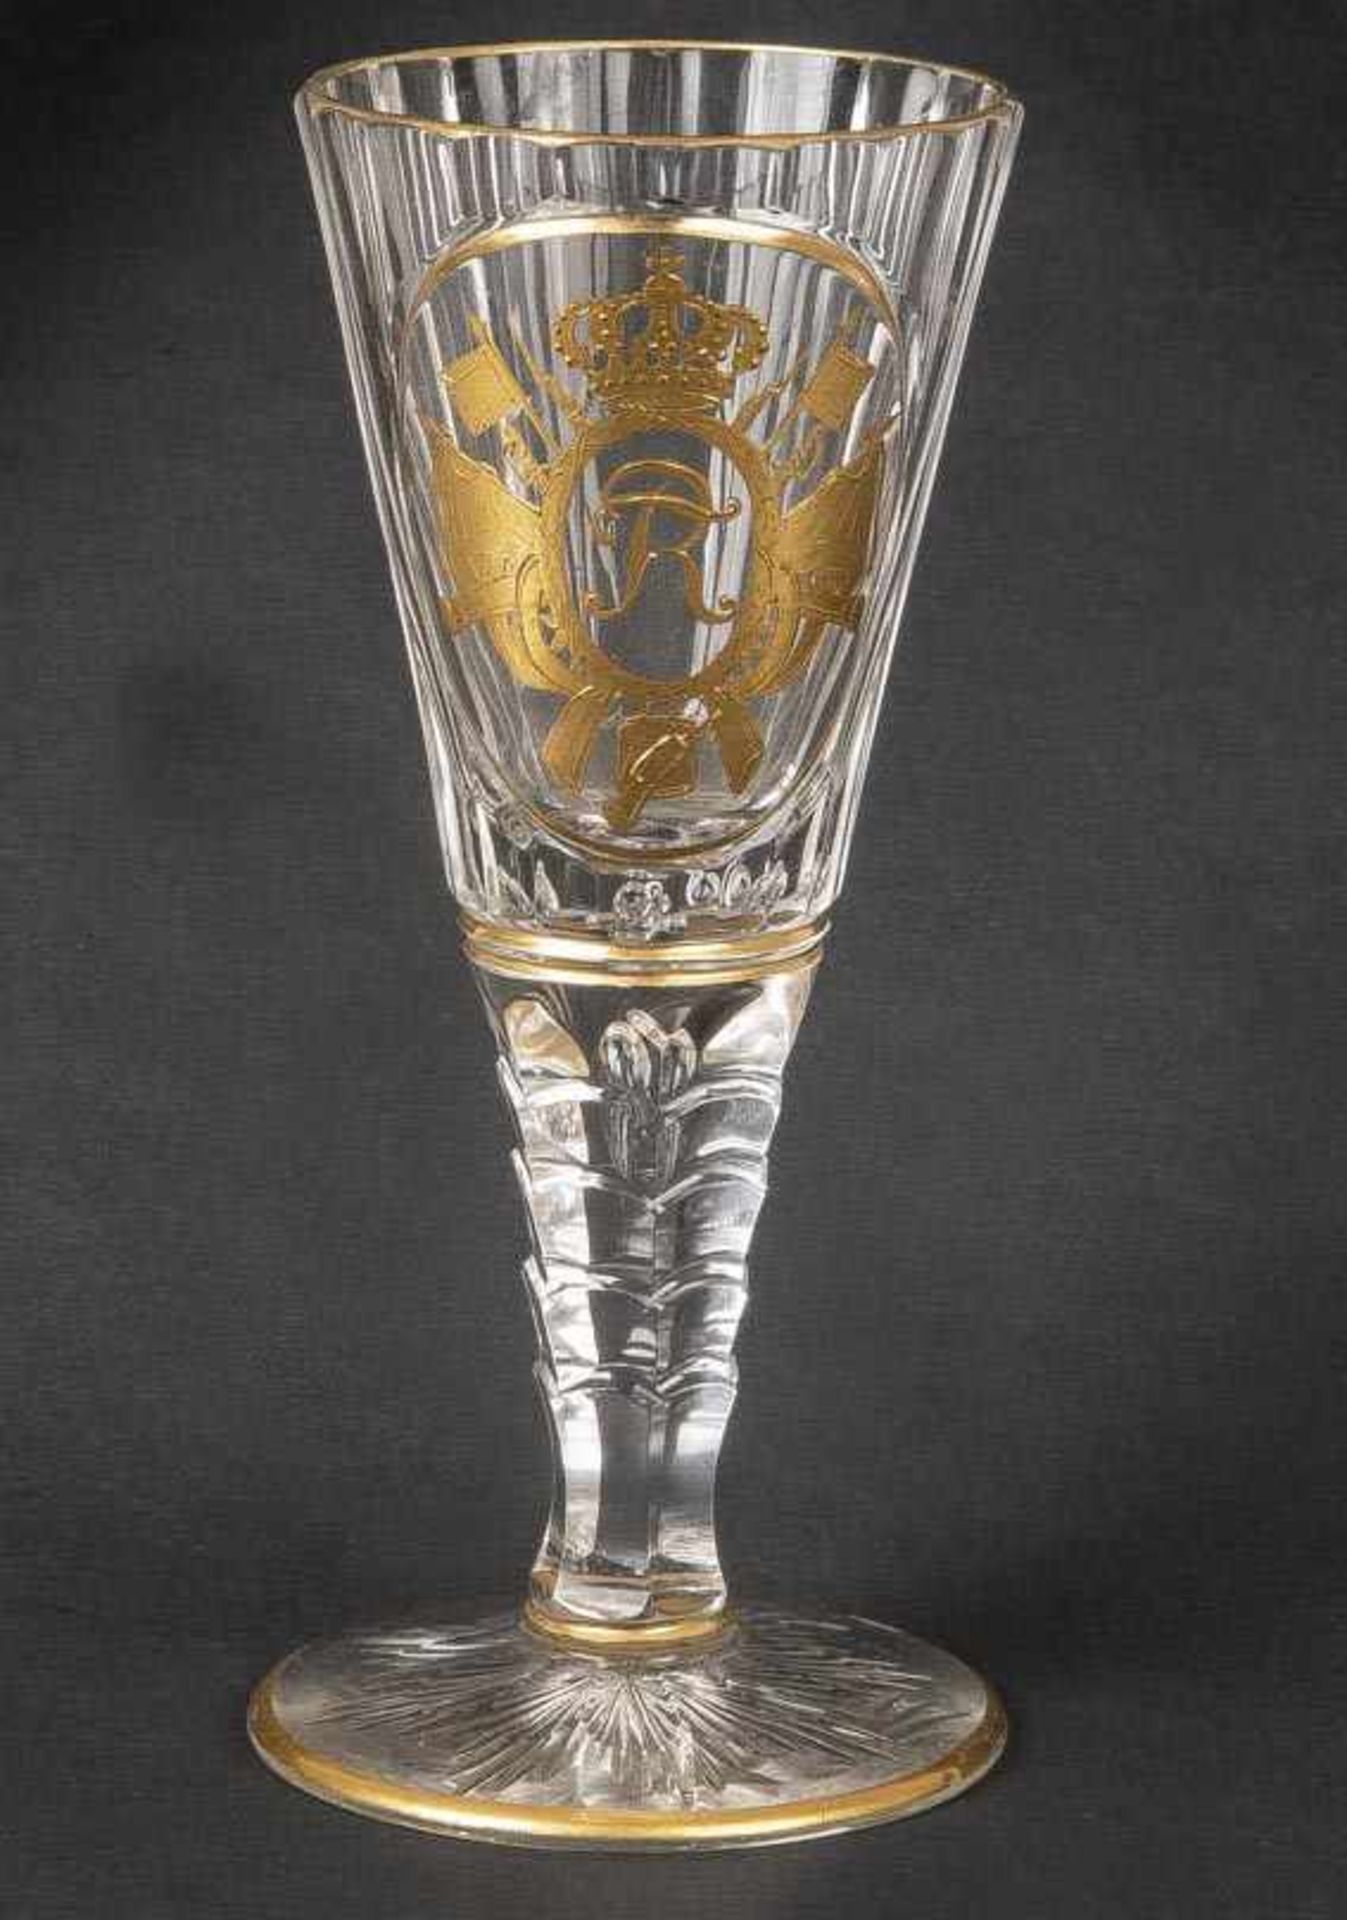 Kelch aus dem Besitz König Friedrich der Große von Preussen. Schlesien um 1750. Farbloses Glas mit